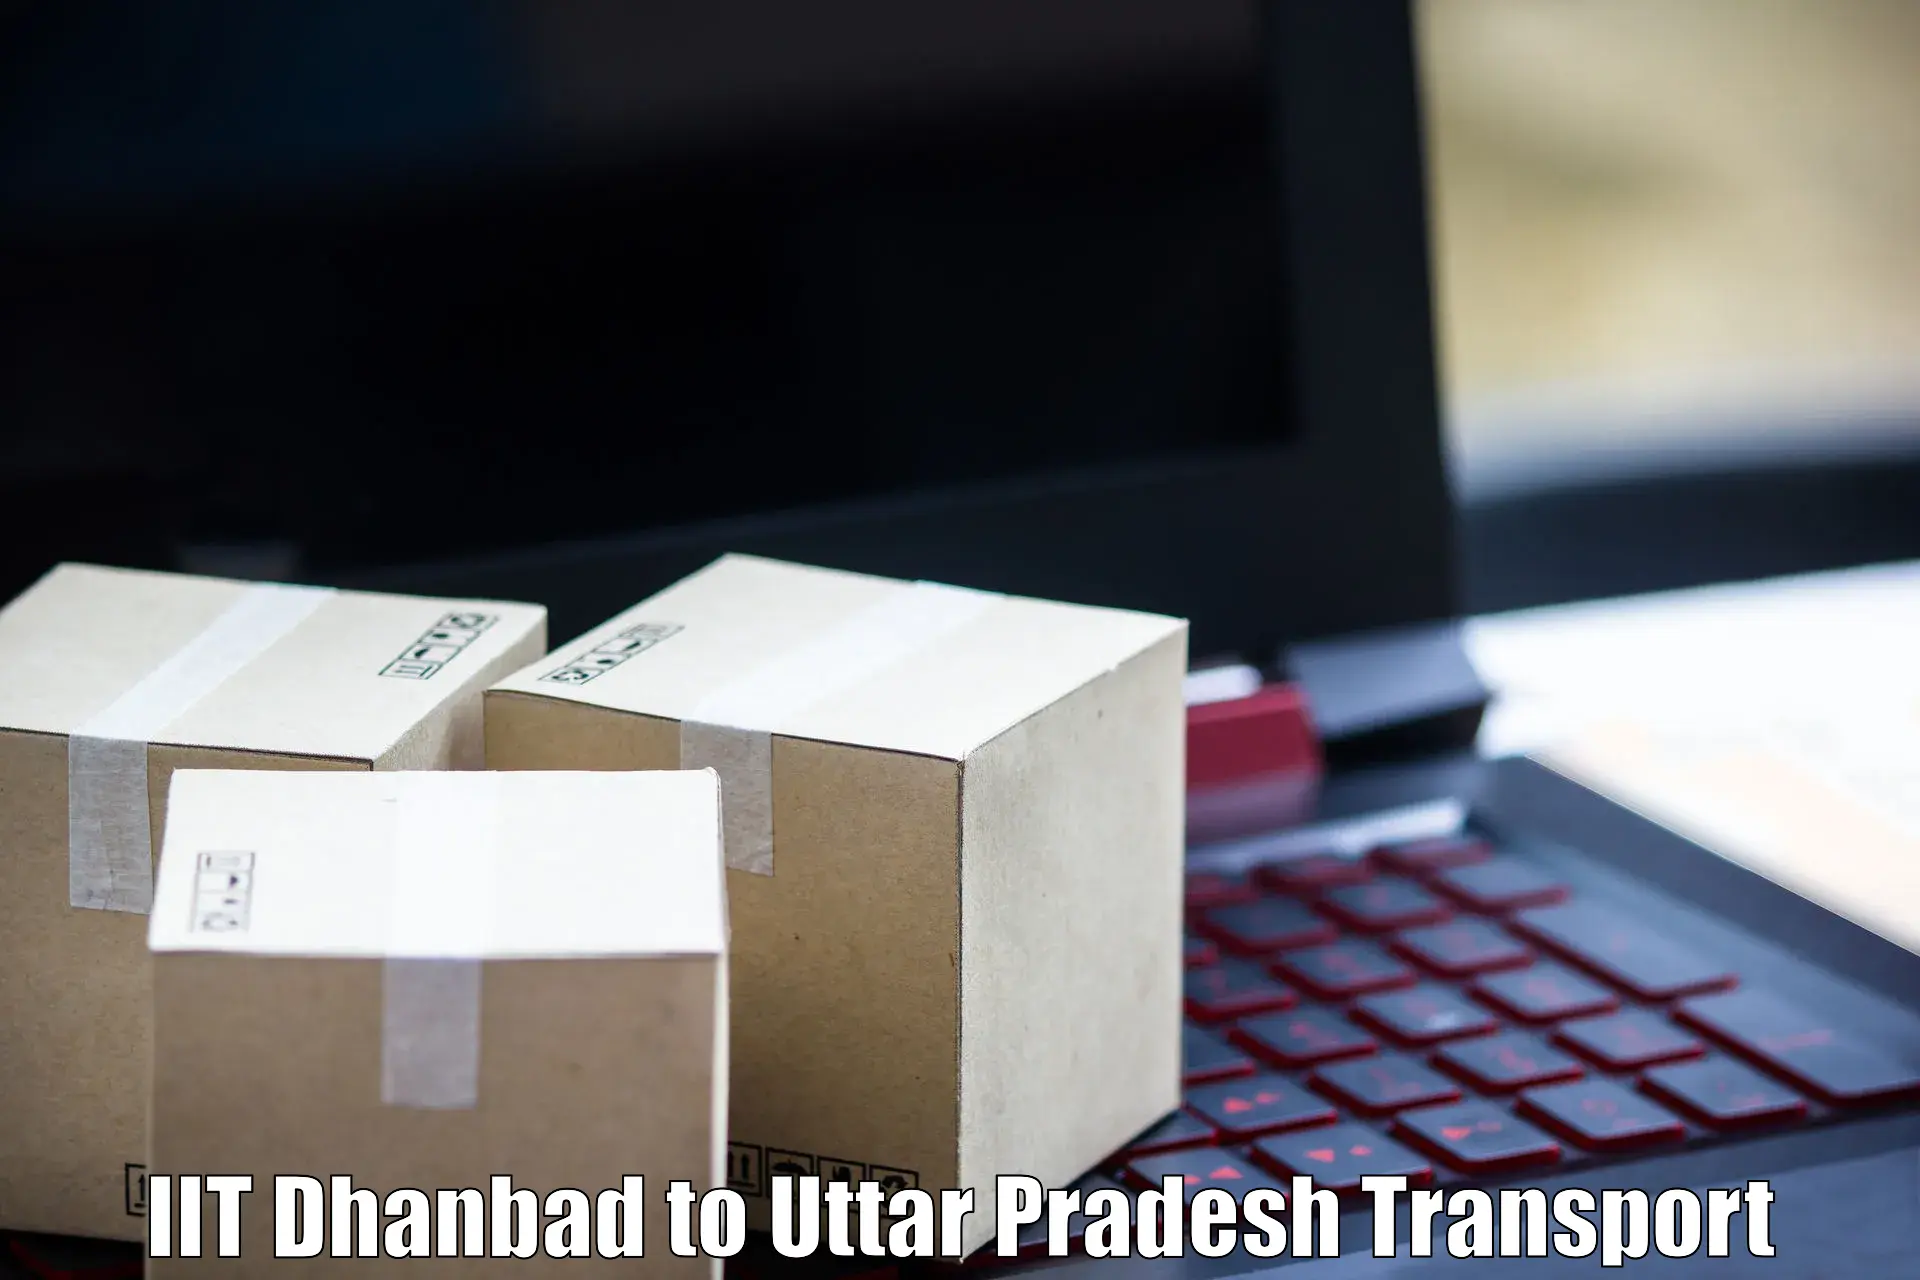 Furniture transport service IIT Dhanbad to Sikandara